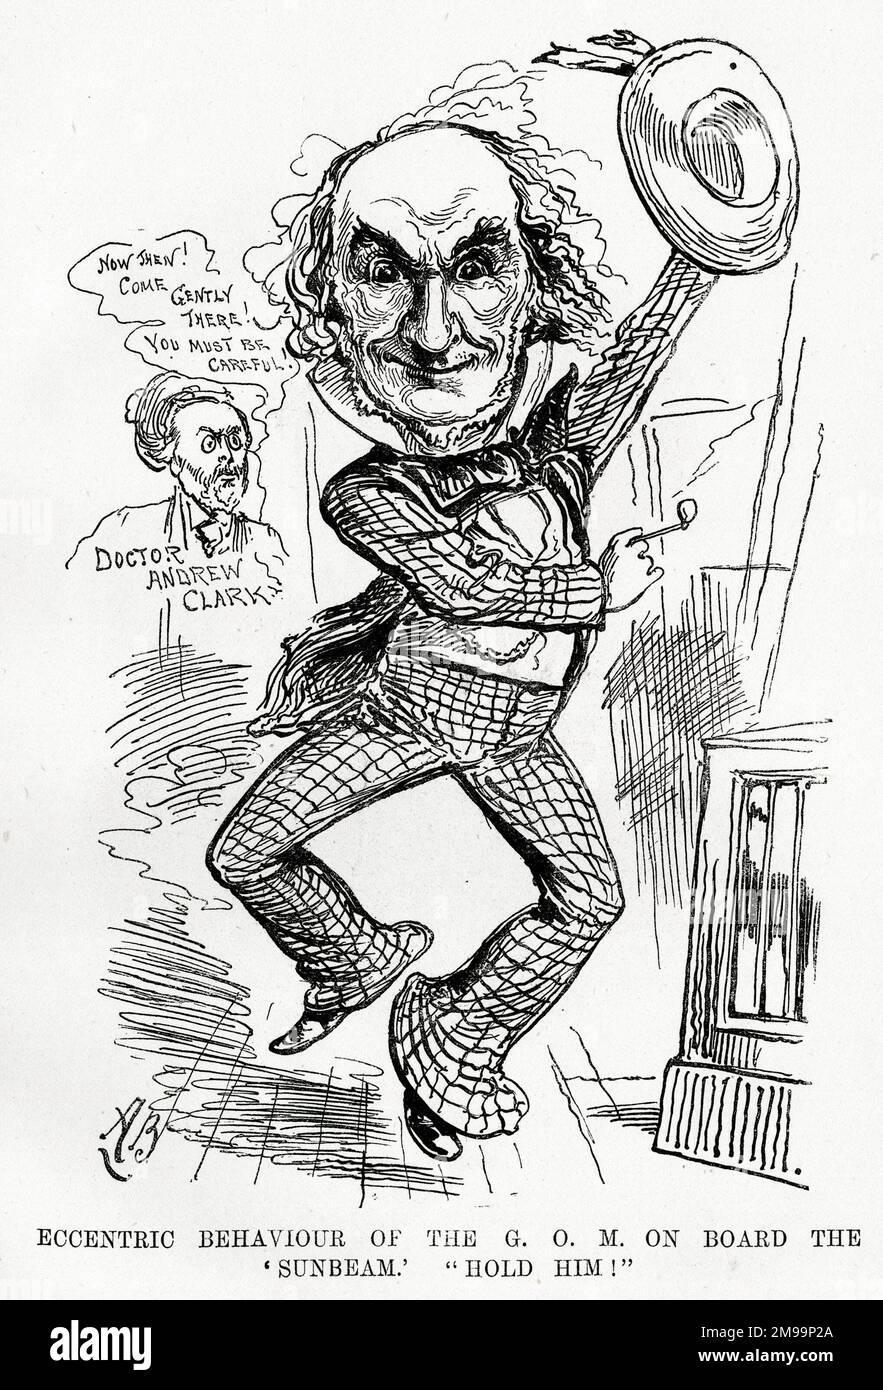 Cartoon, William Gladstone e il dottor Andrew Clark (il suo medico), eccentrico comportamento del GOM [Grand Old Man] a bordo del Sunbeam - tenerlo! Foto Stock